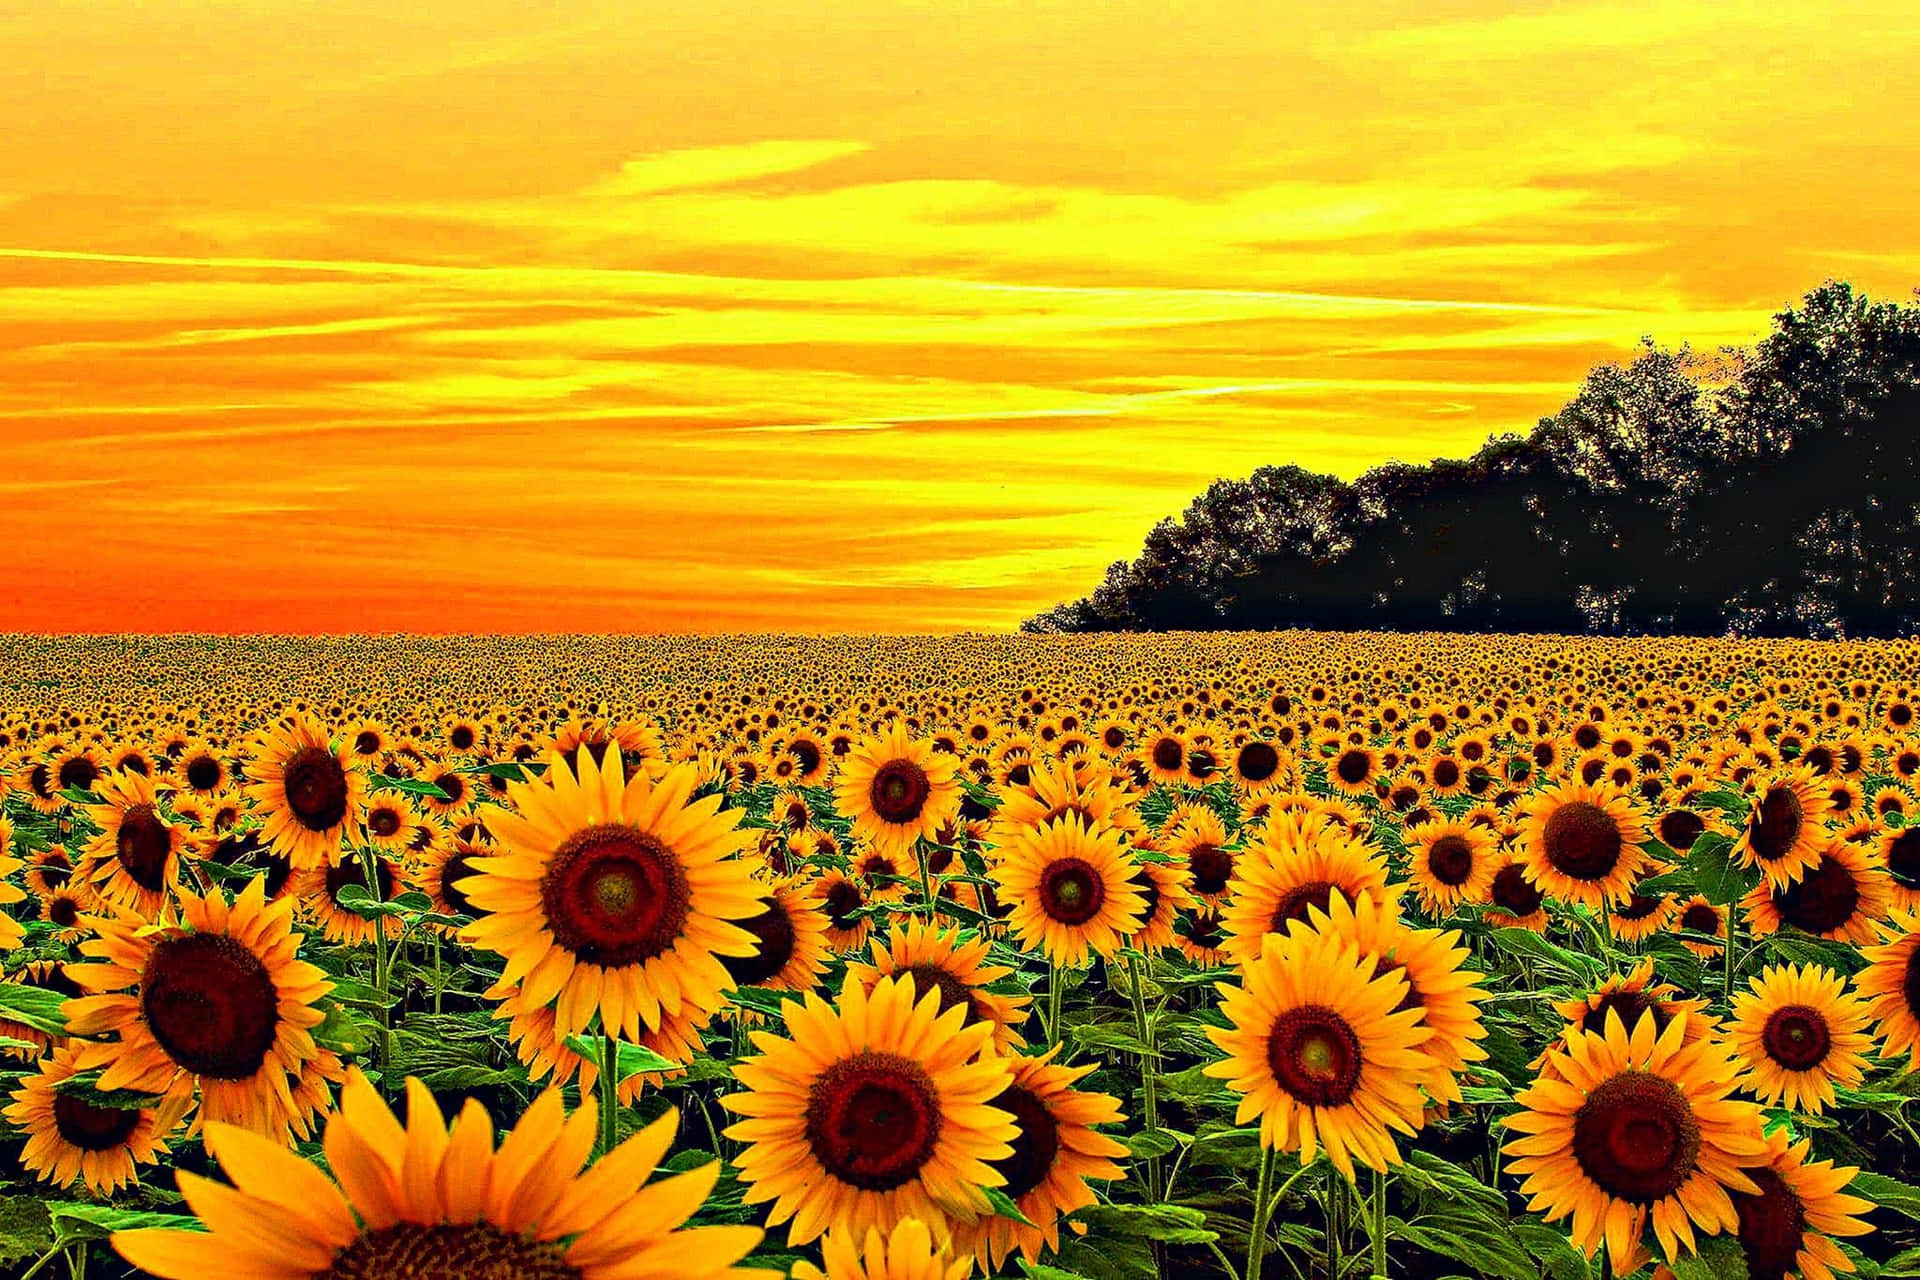 Wallpaper sunflower sunflower Girasol images for desktop section цветы   download